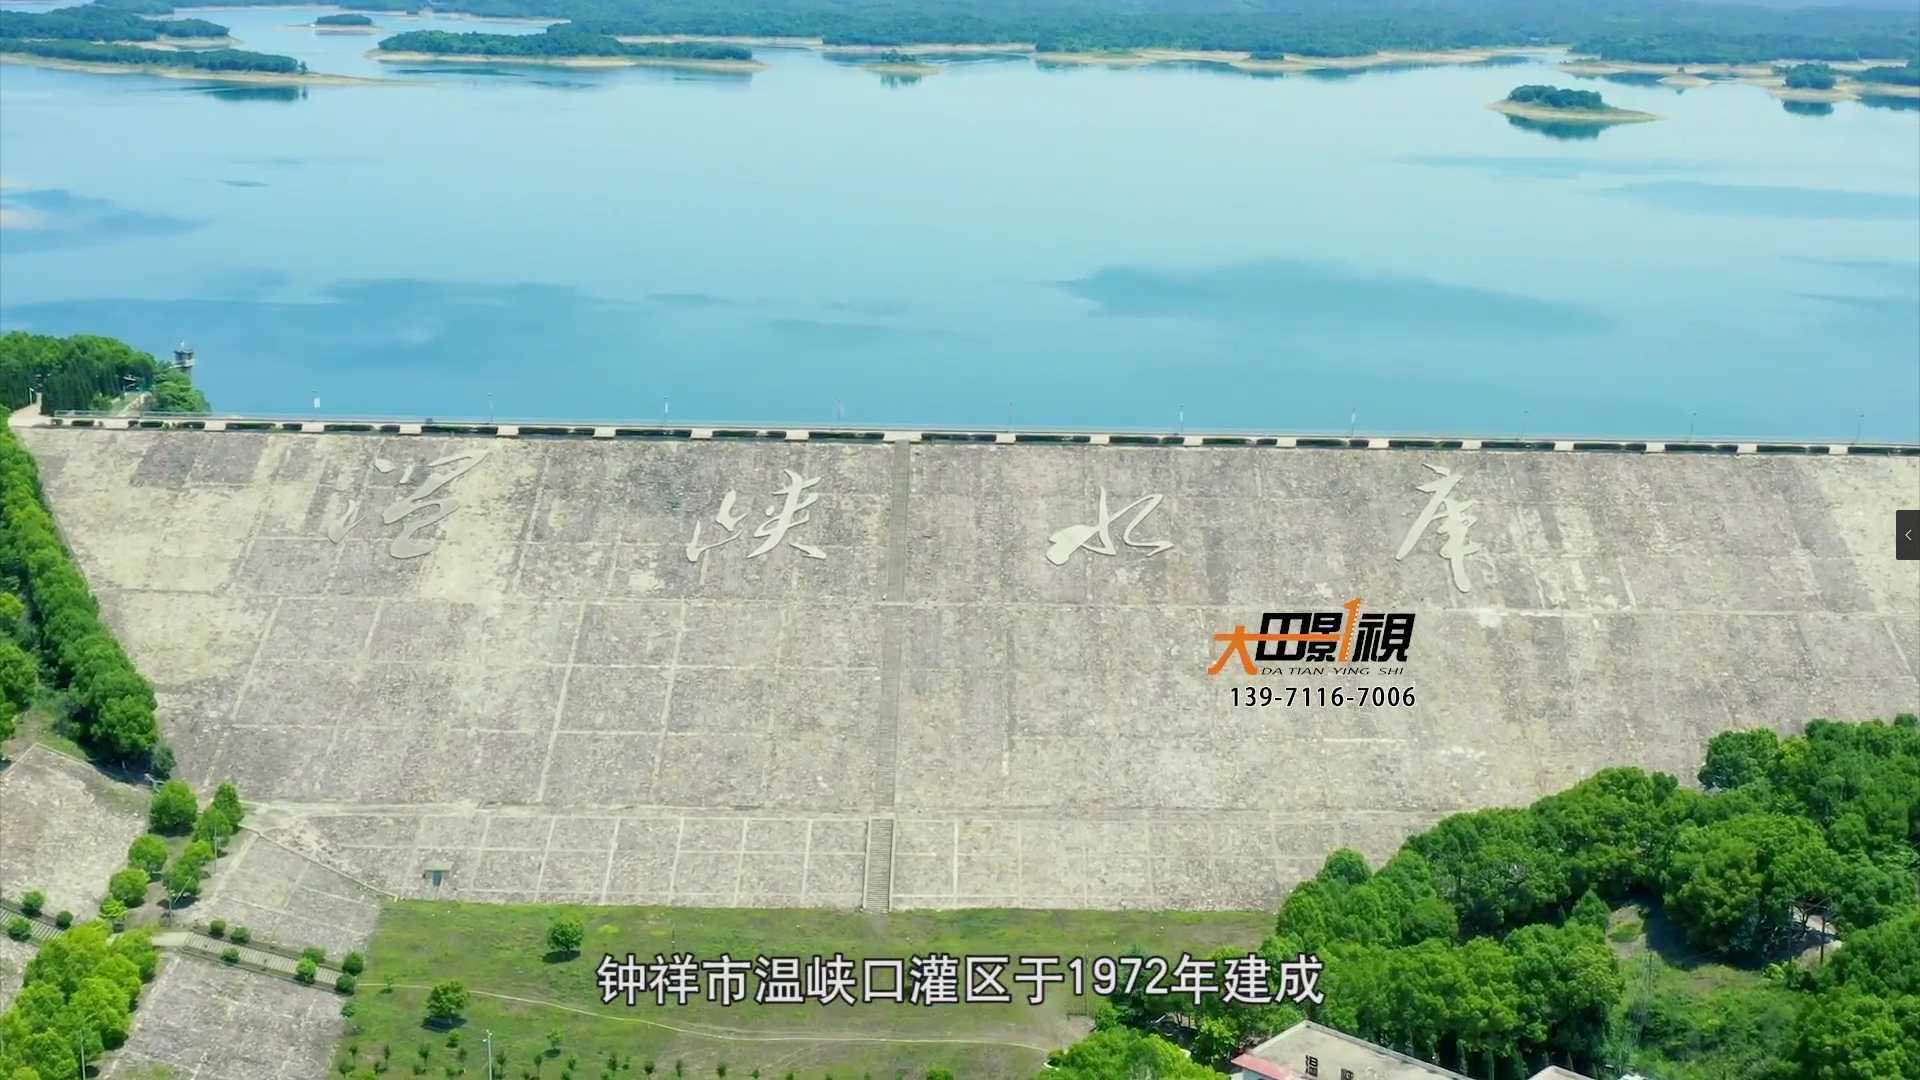 江汉杯 灌区工程 灌区项目 灌区拍摄 江汉杯视频 江汉杯制作